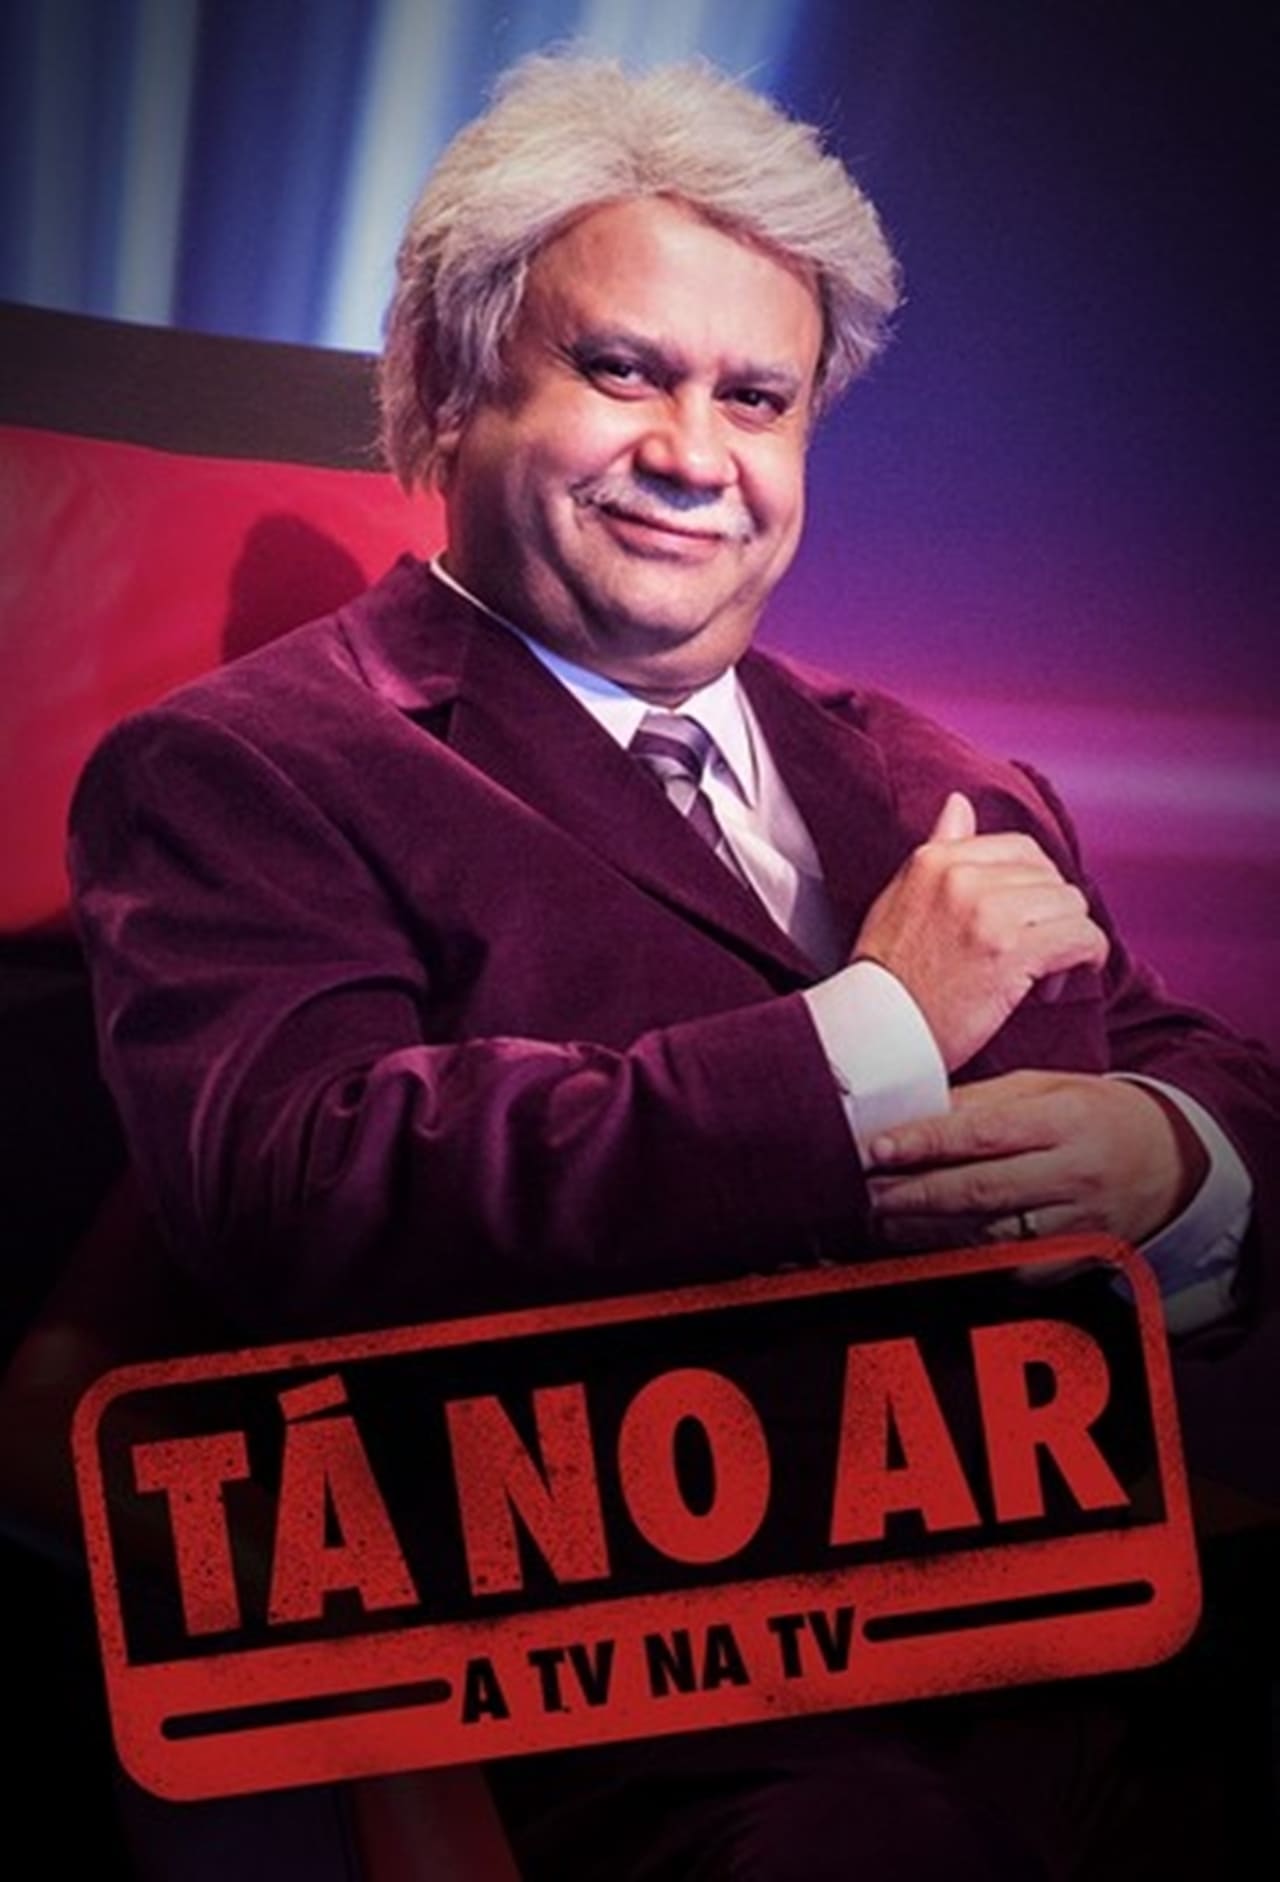 Tá No Ar: A TV Na TV (2018)